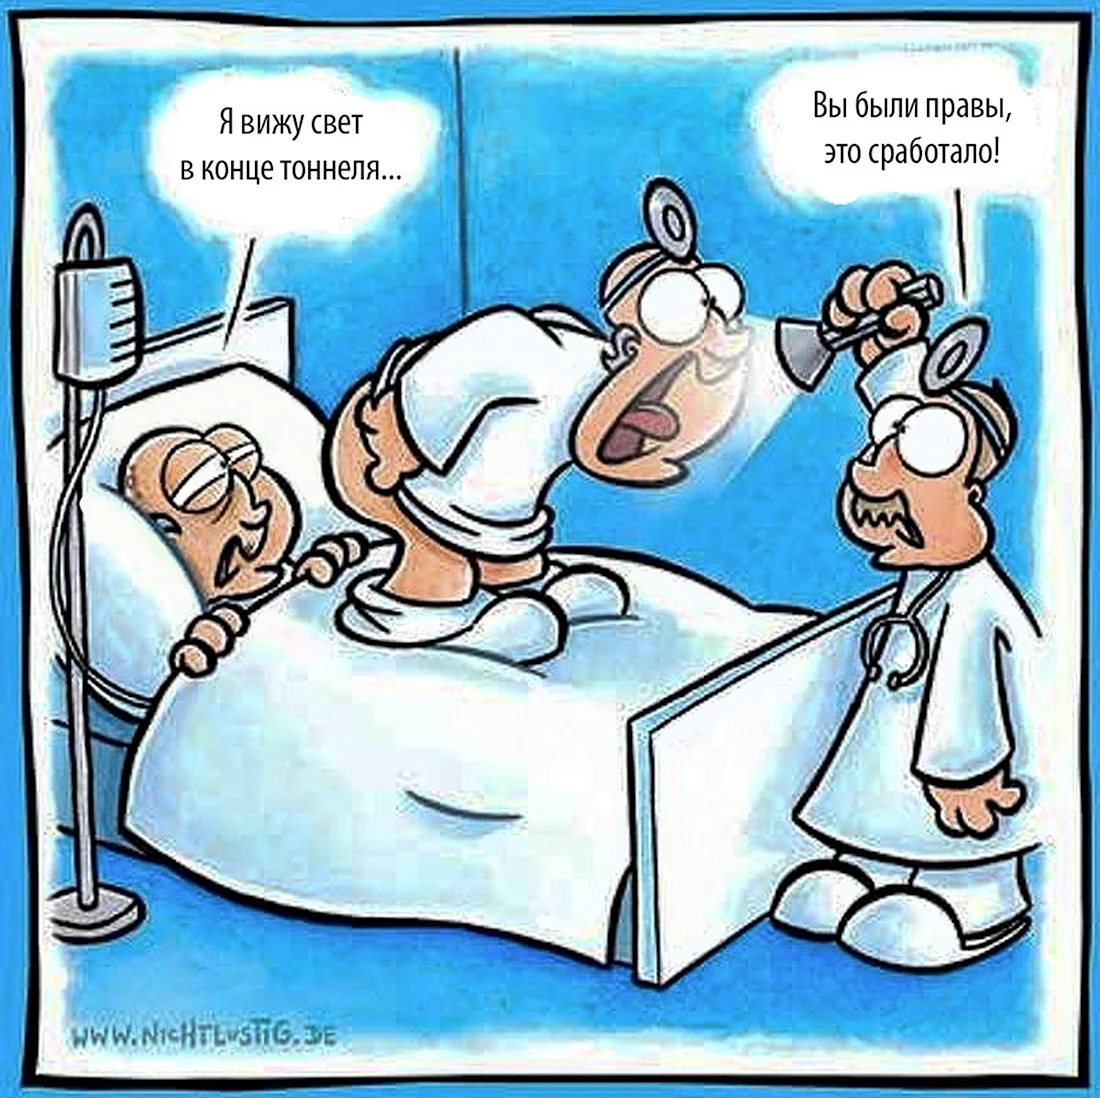 Медицинский юмор в картинках. Анекдот в картинке